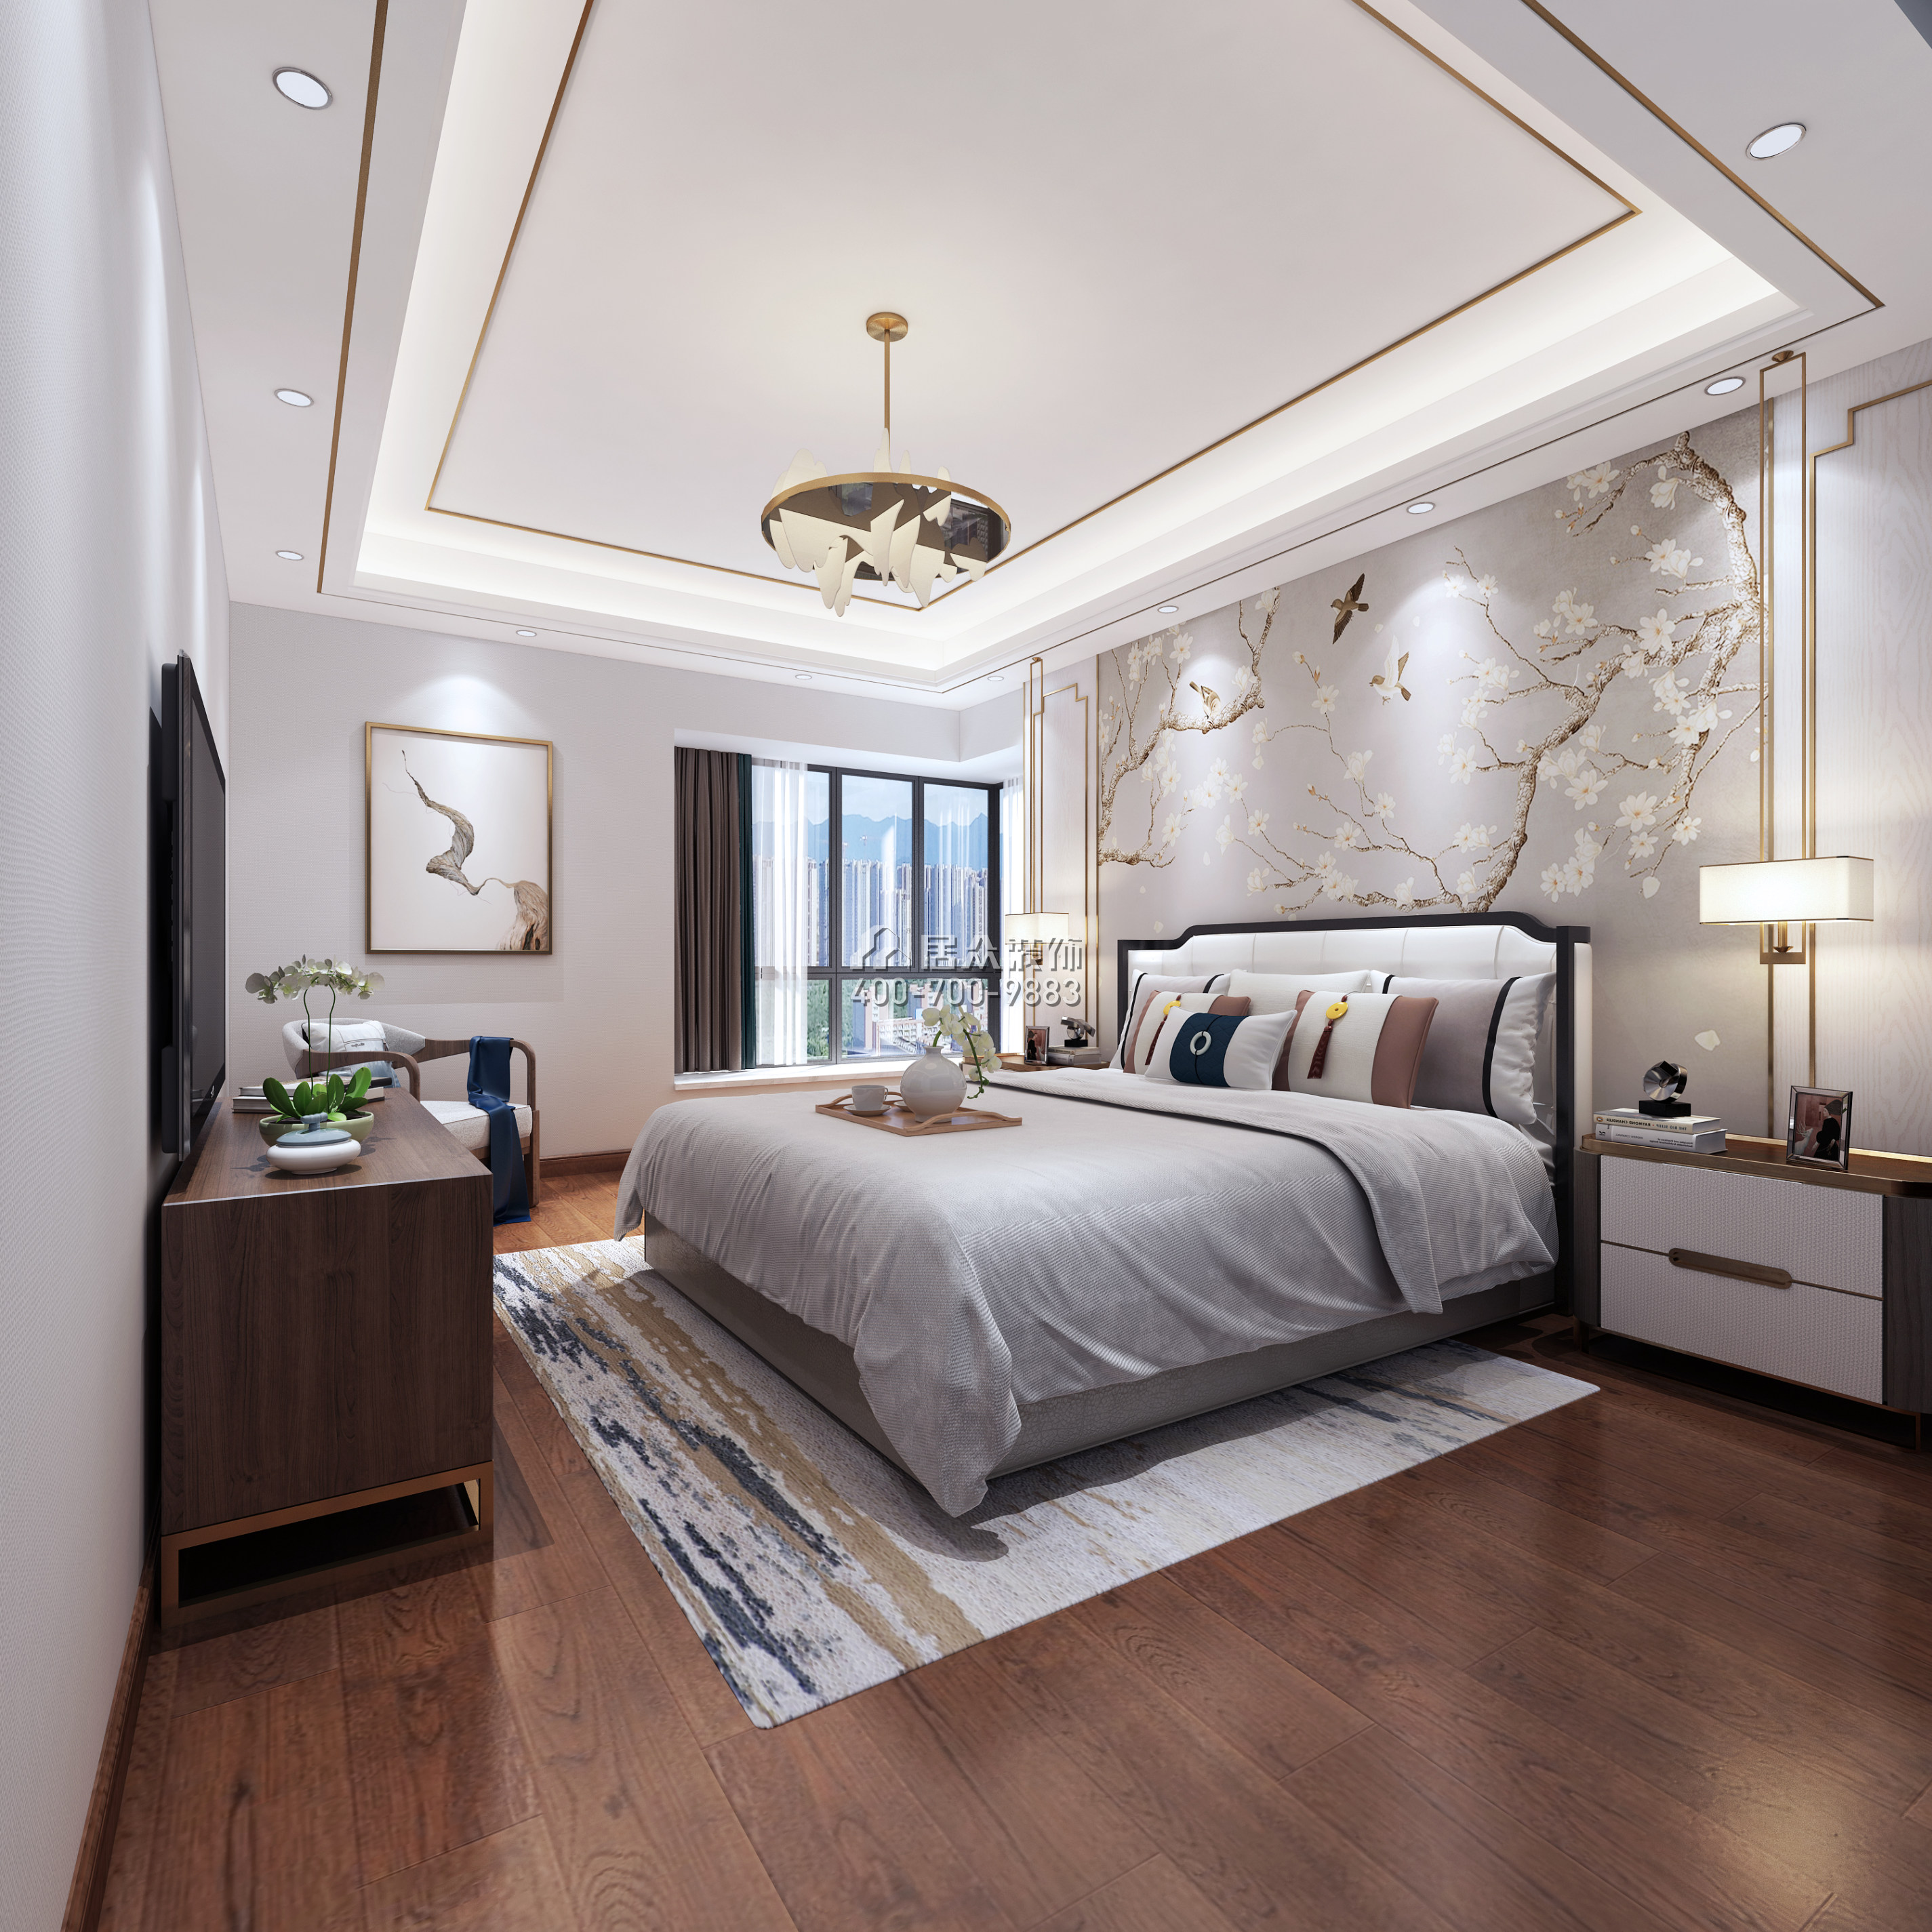 桃源居220平方米中式风格复式户型卧室装修效果图